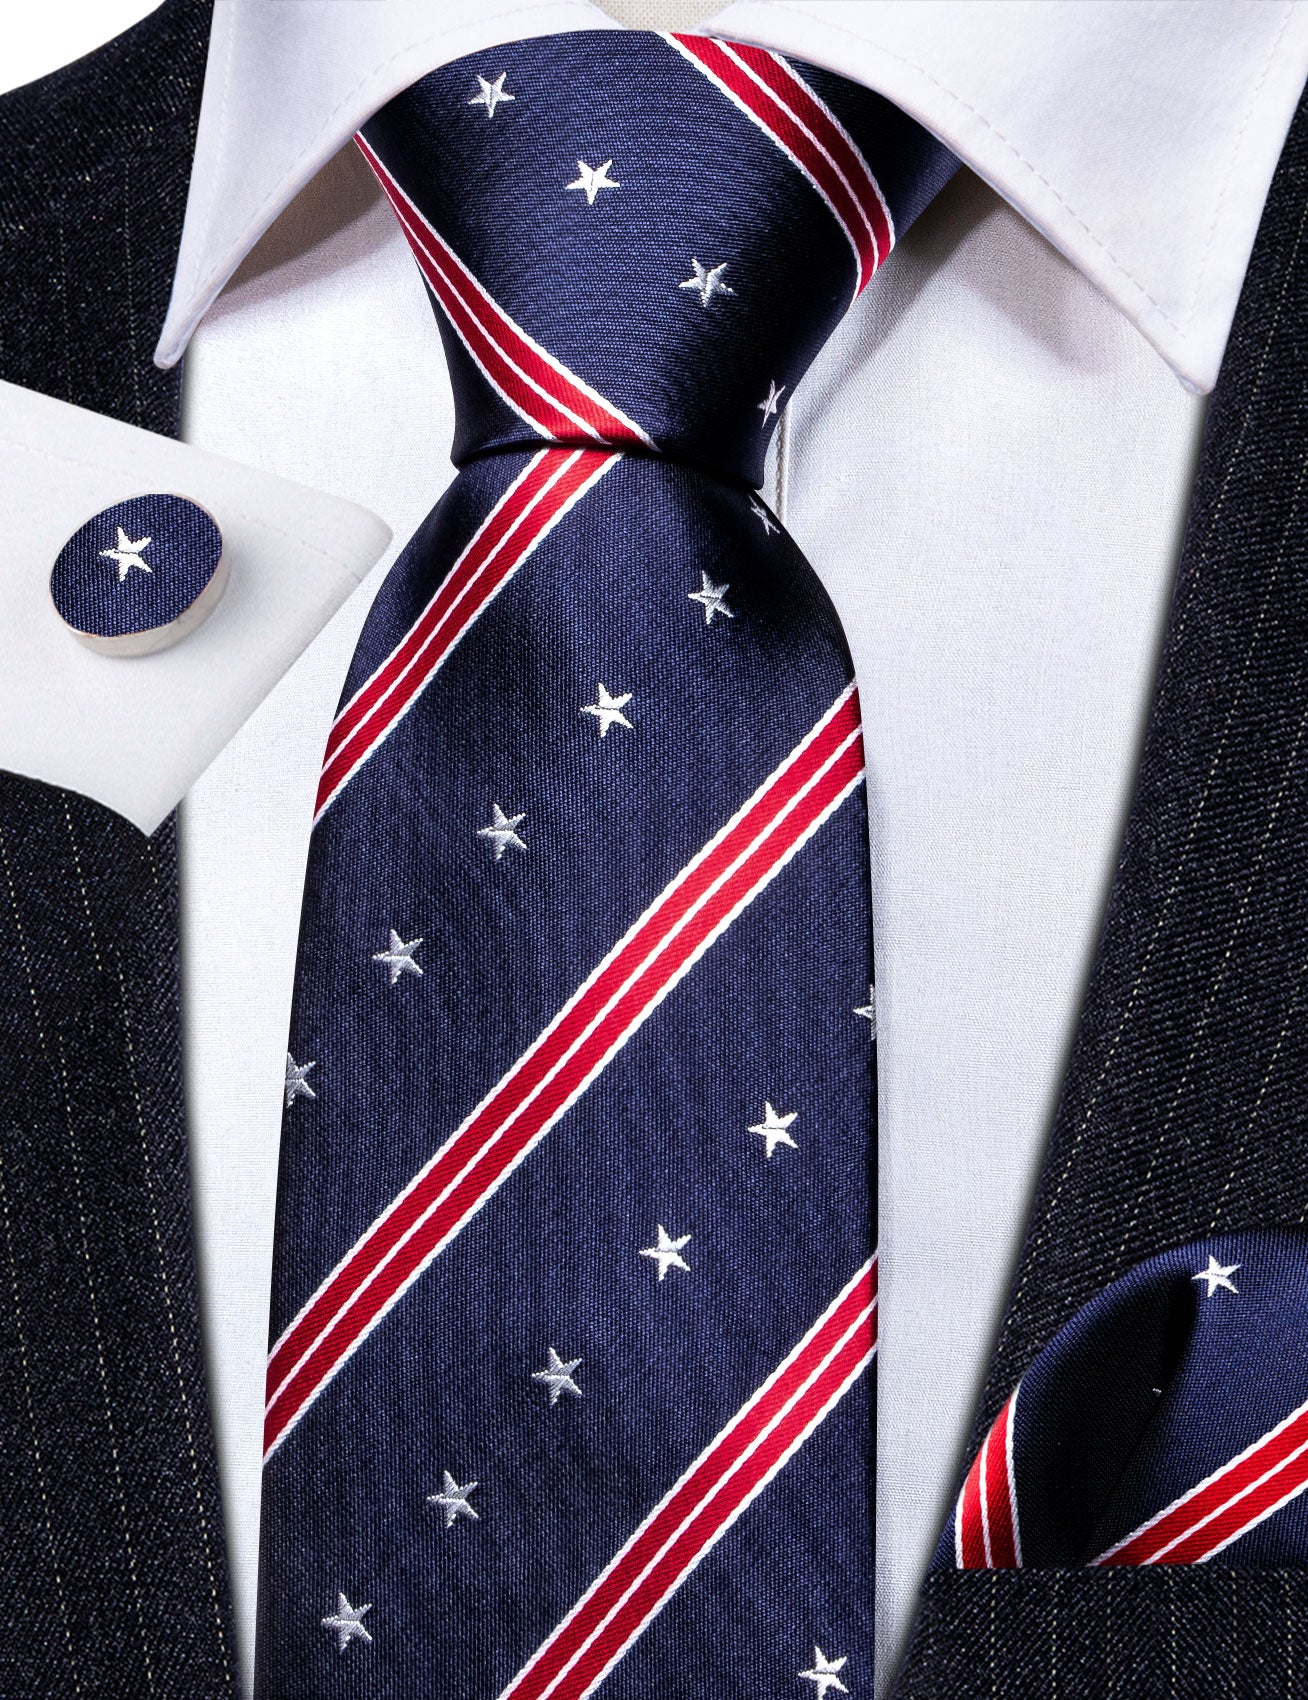 Blue and Red Stripe Tie Tie Hanky Cufflinks Set